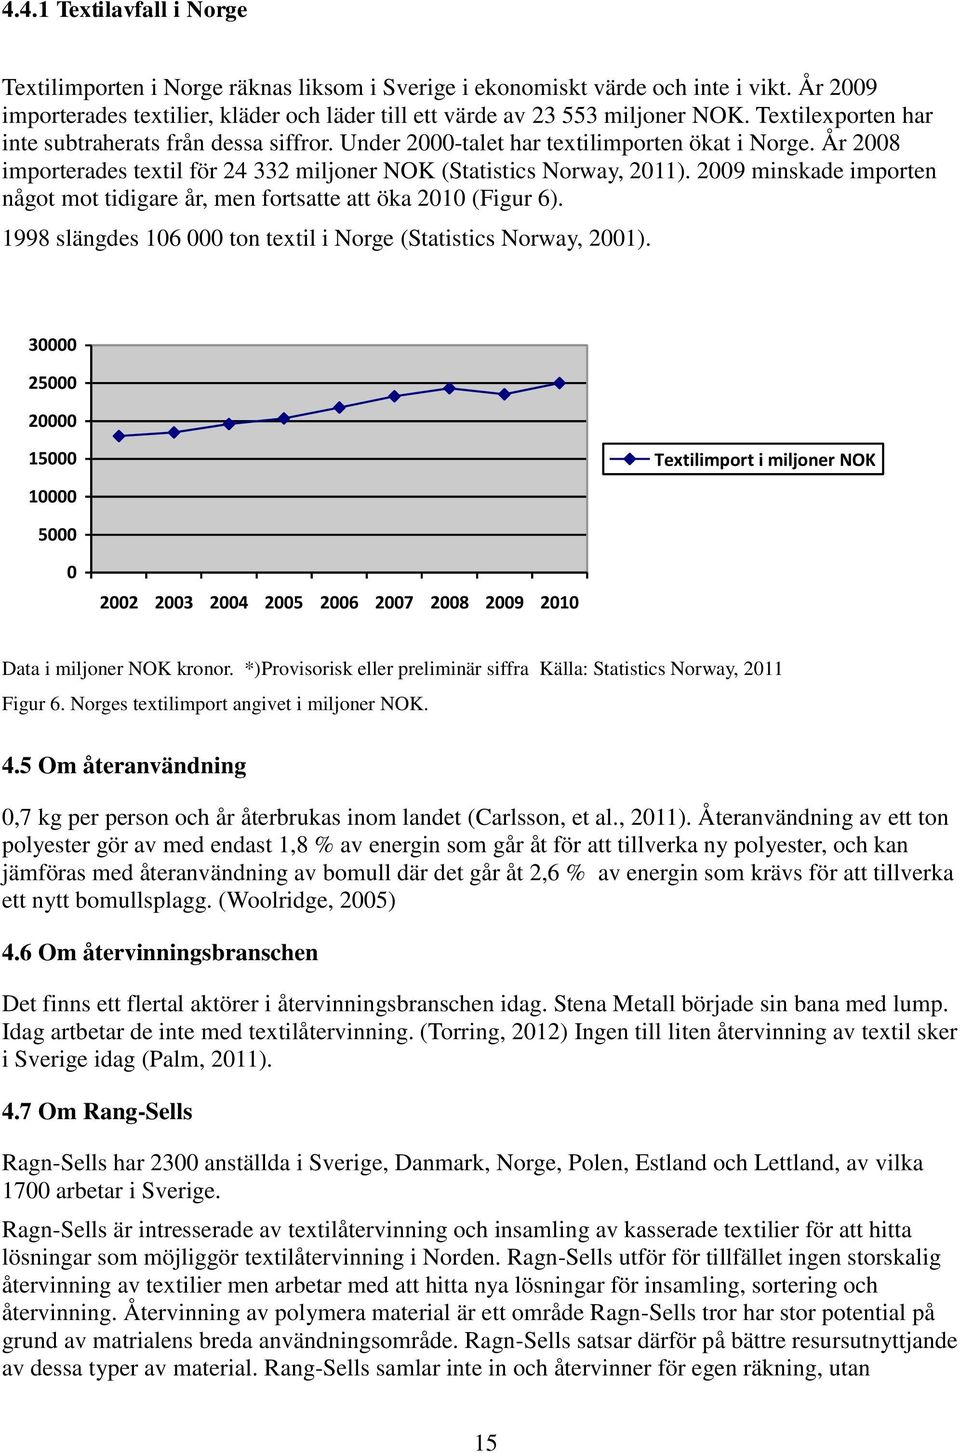 2009 minskade importen något mot tidigare år, men fortsatte att öka 2010 (Figur 6). 1998 slängdes 106 000 ton textil i Norge (Statistics Norway, 2001).